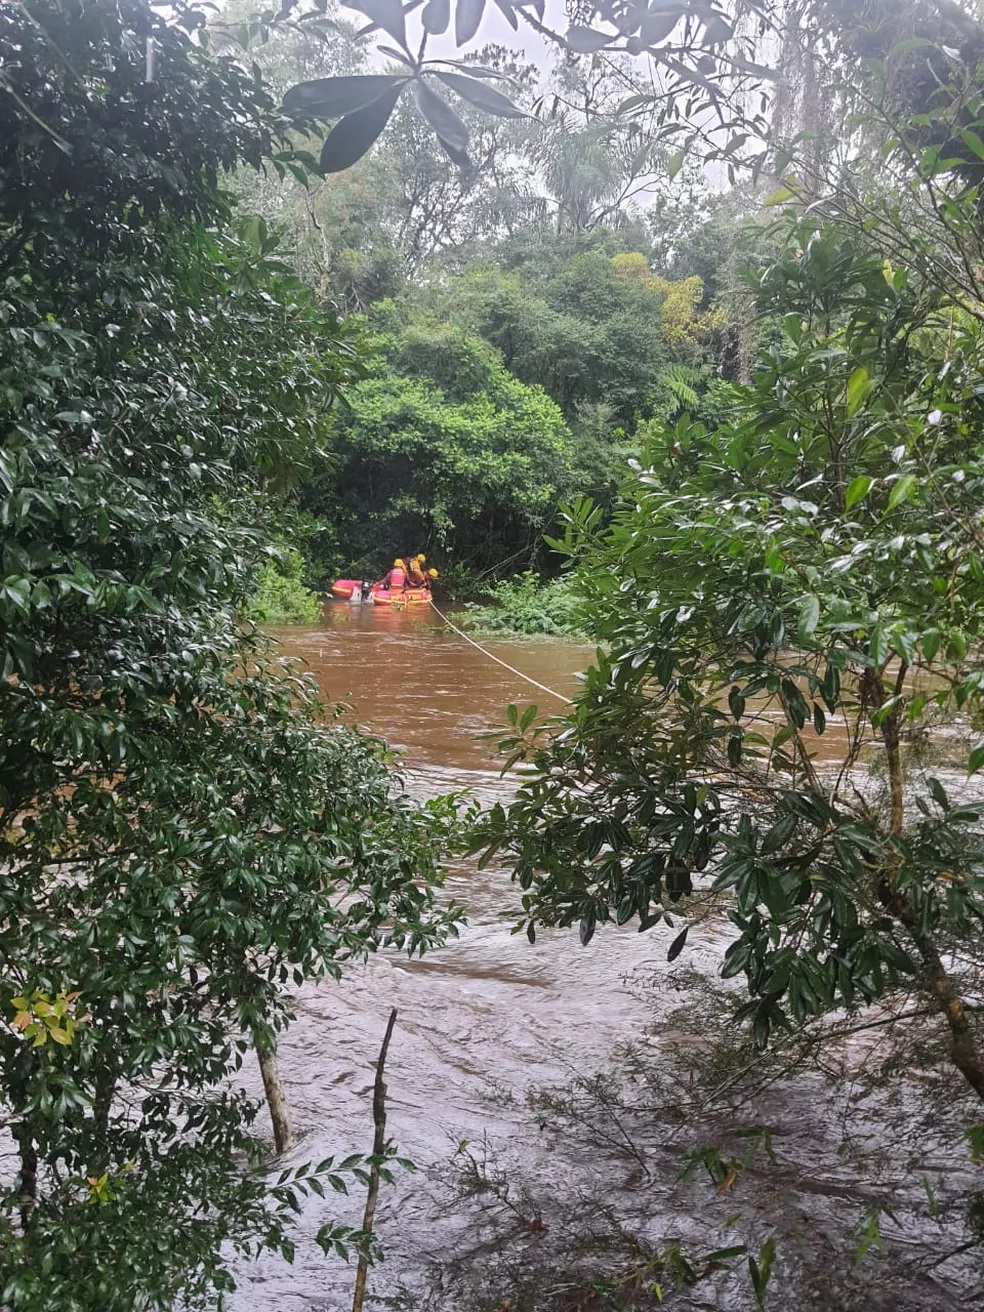 Vídeo: trabalhadores rurais são resgatados após mais de 12 horas ilhados por enchente em SC